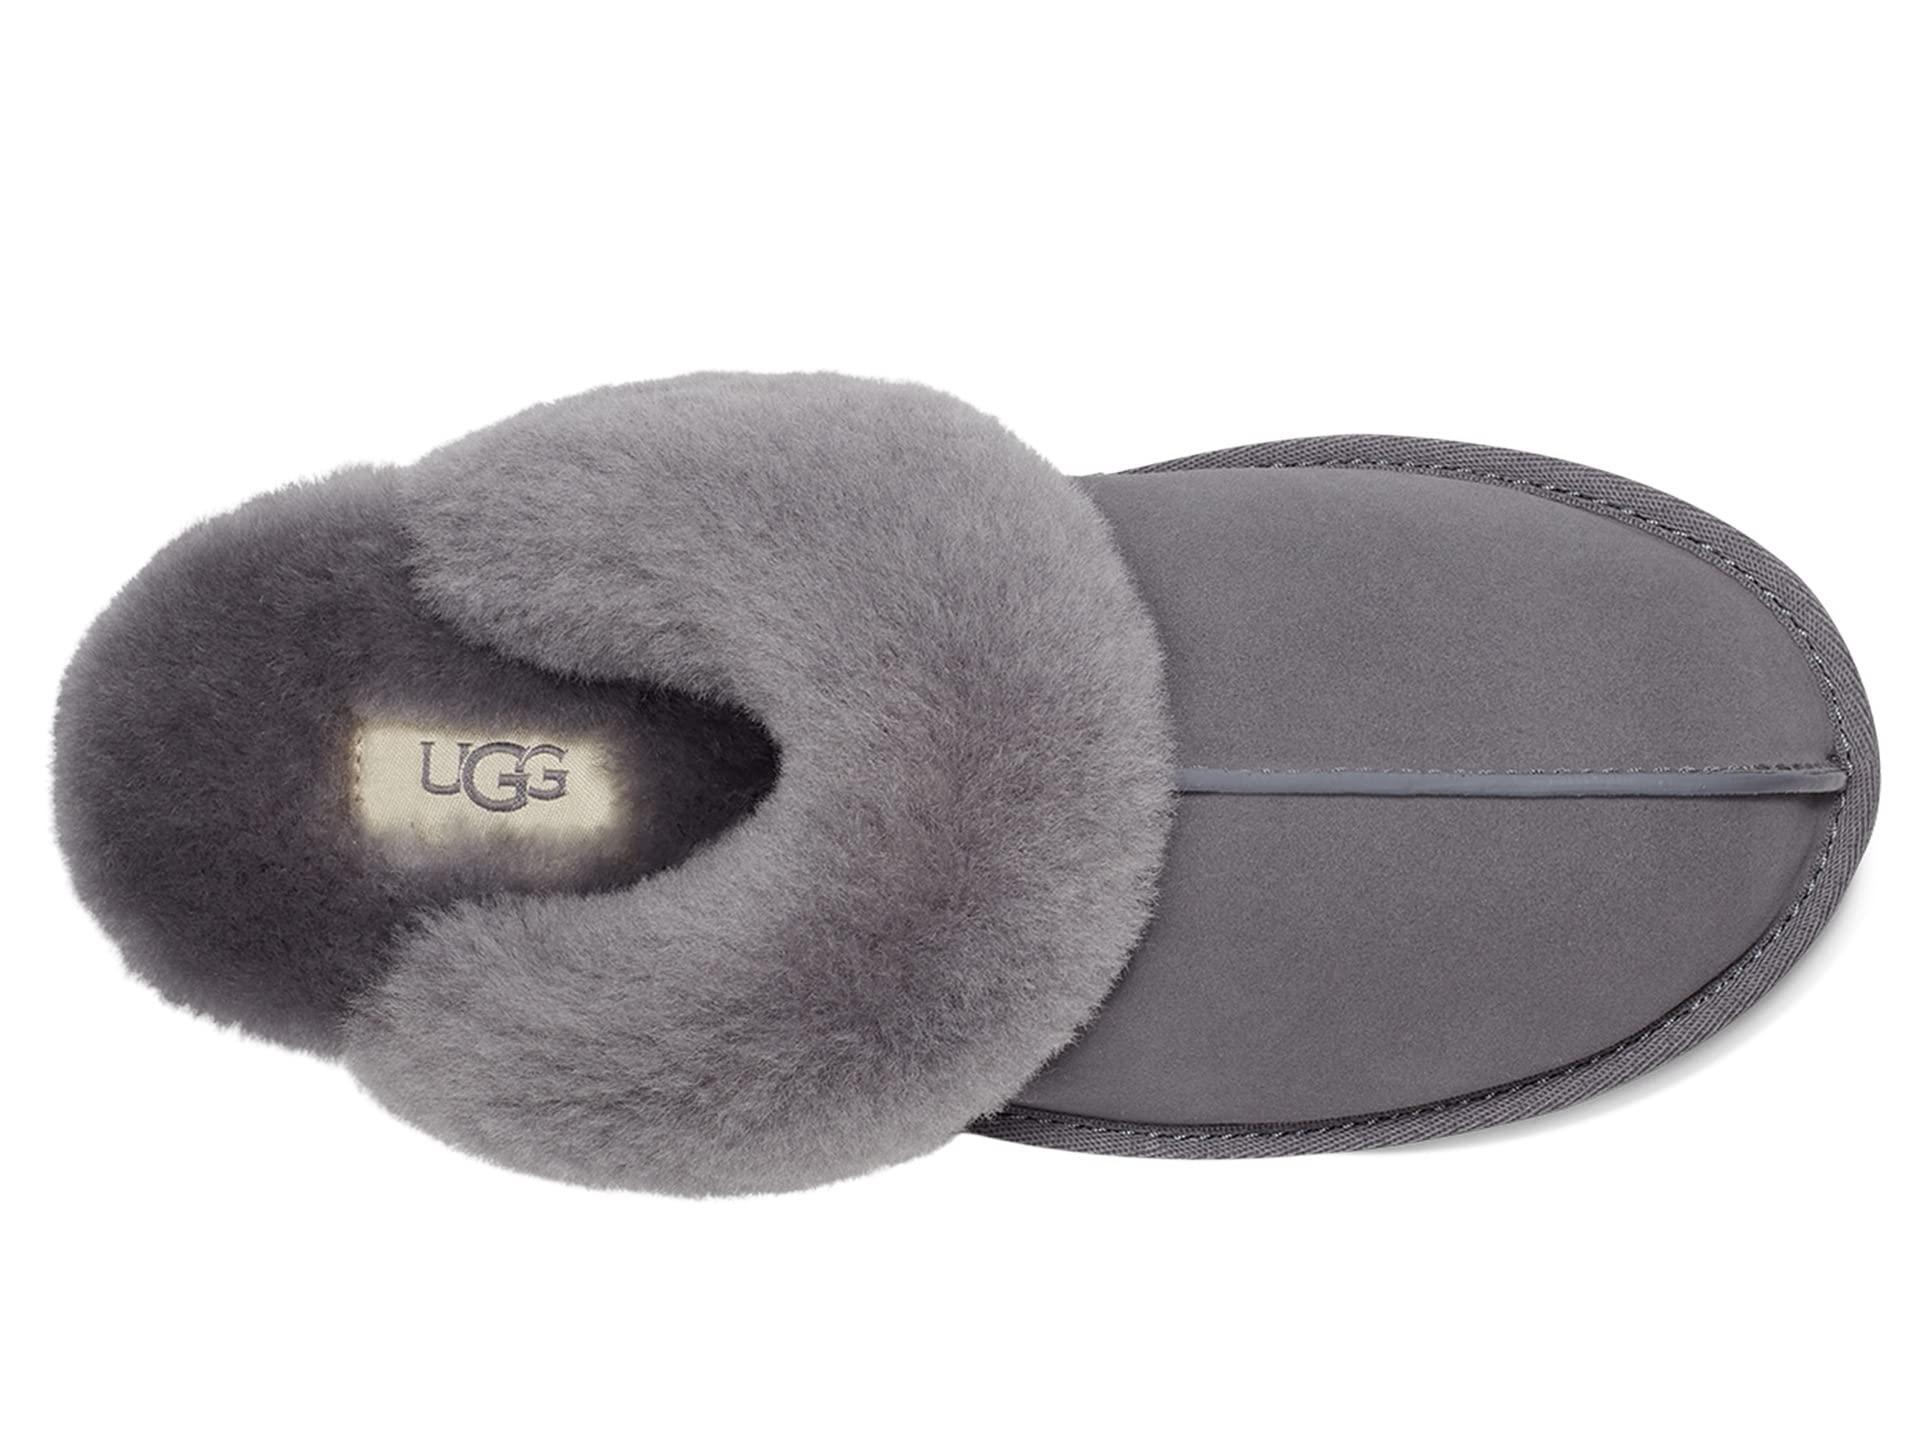 UGG Scuffette Ii Water-resistant Slipper in Gray | Lyst